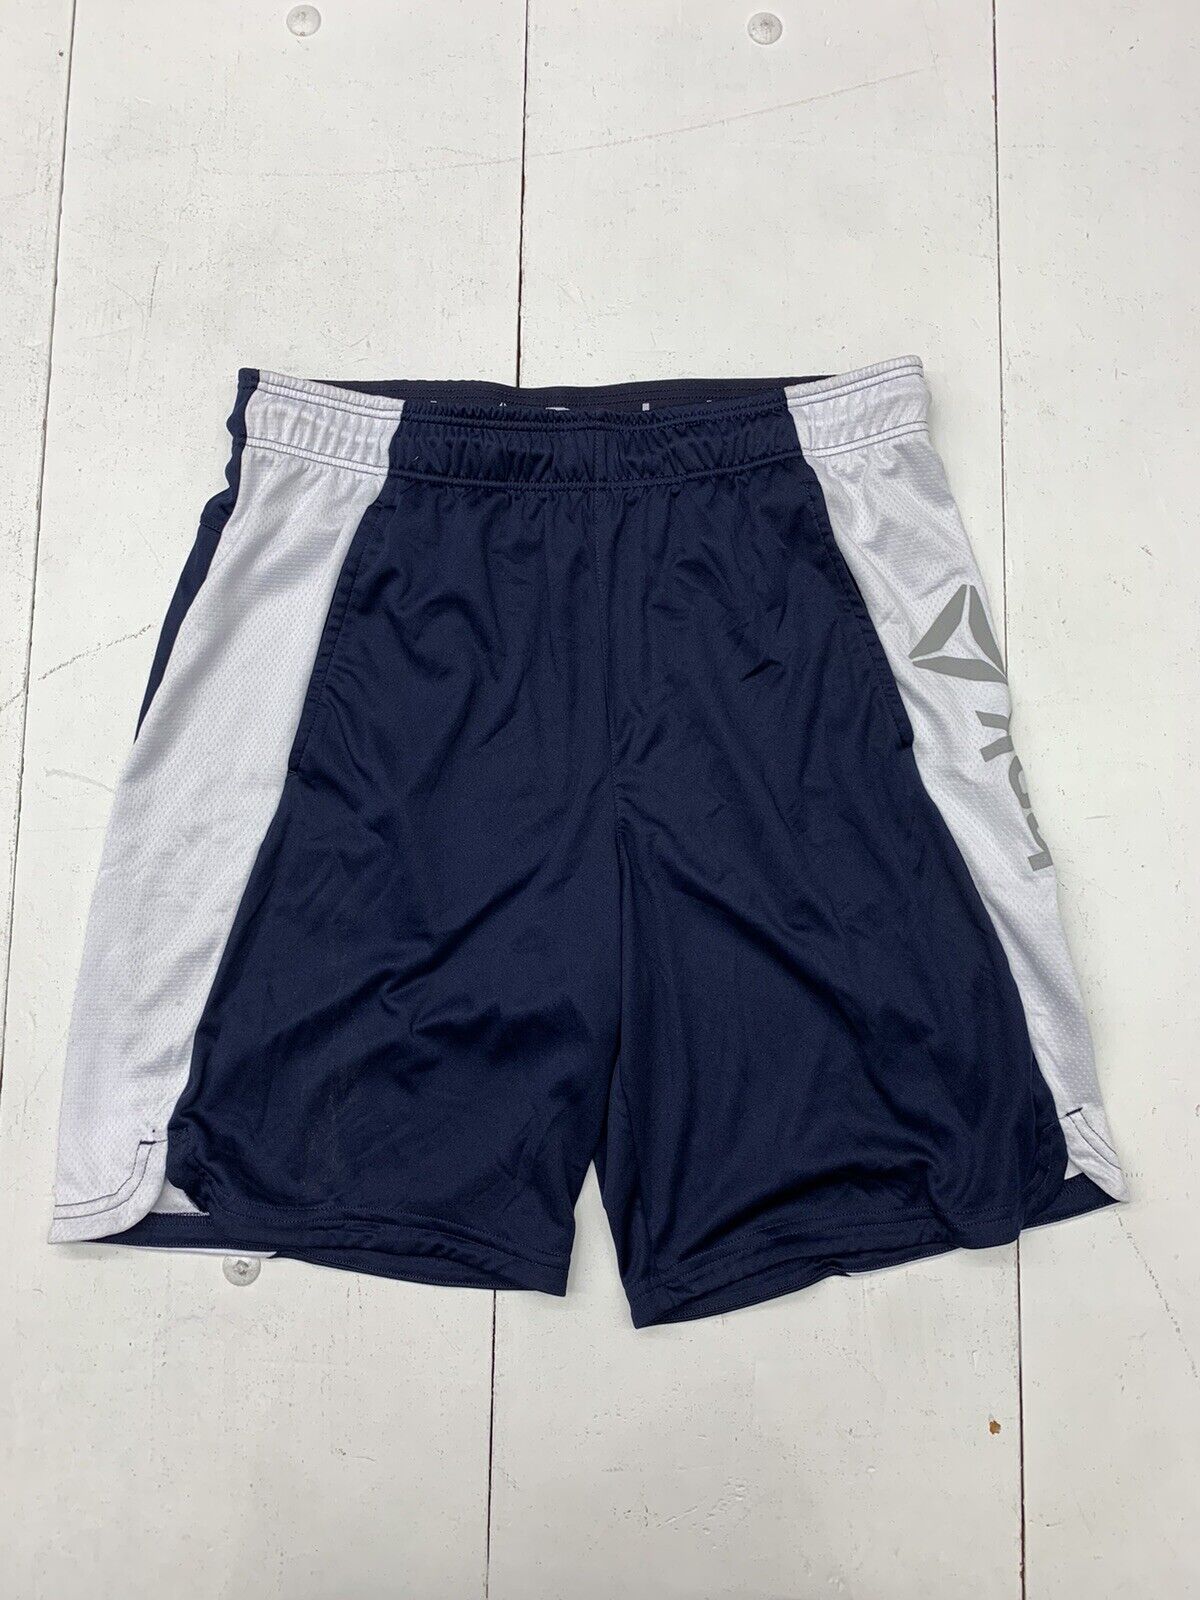 Reebok Mens Dark Blue Athletic Shorts Size Large - beyond exchange